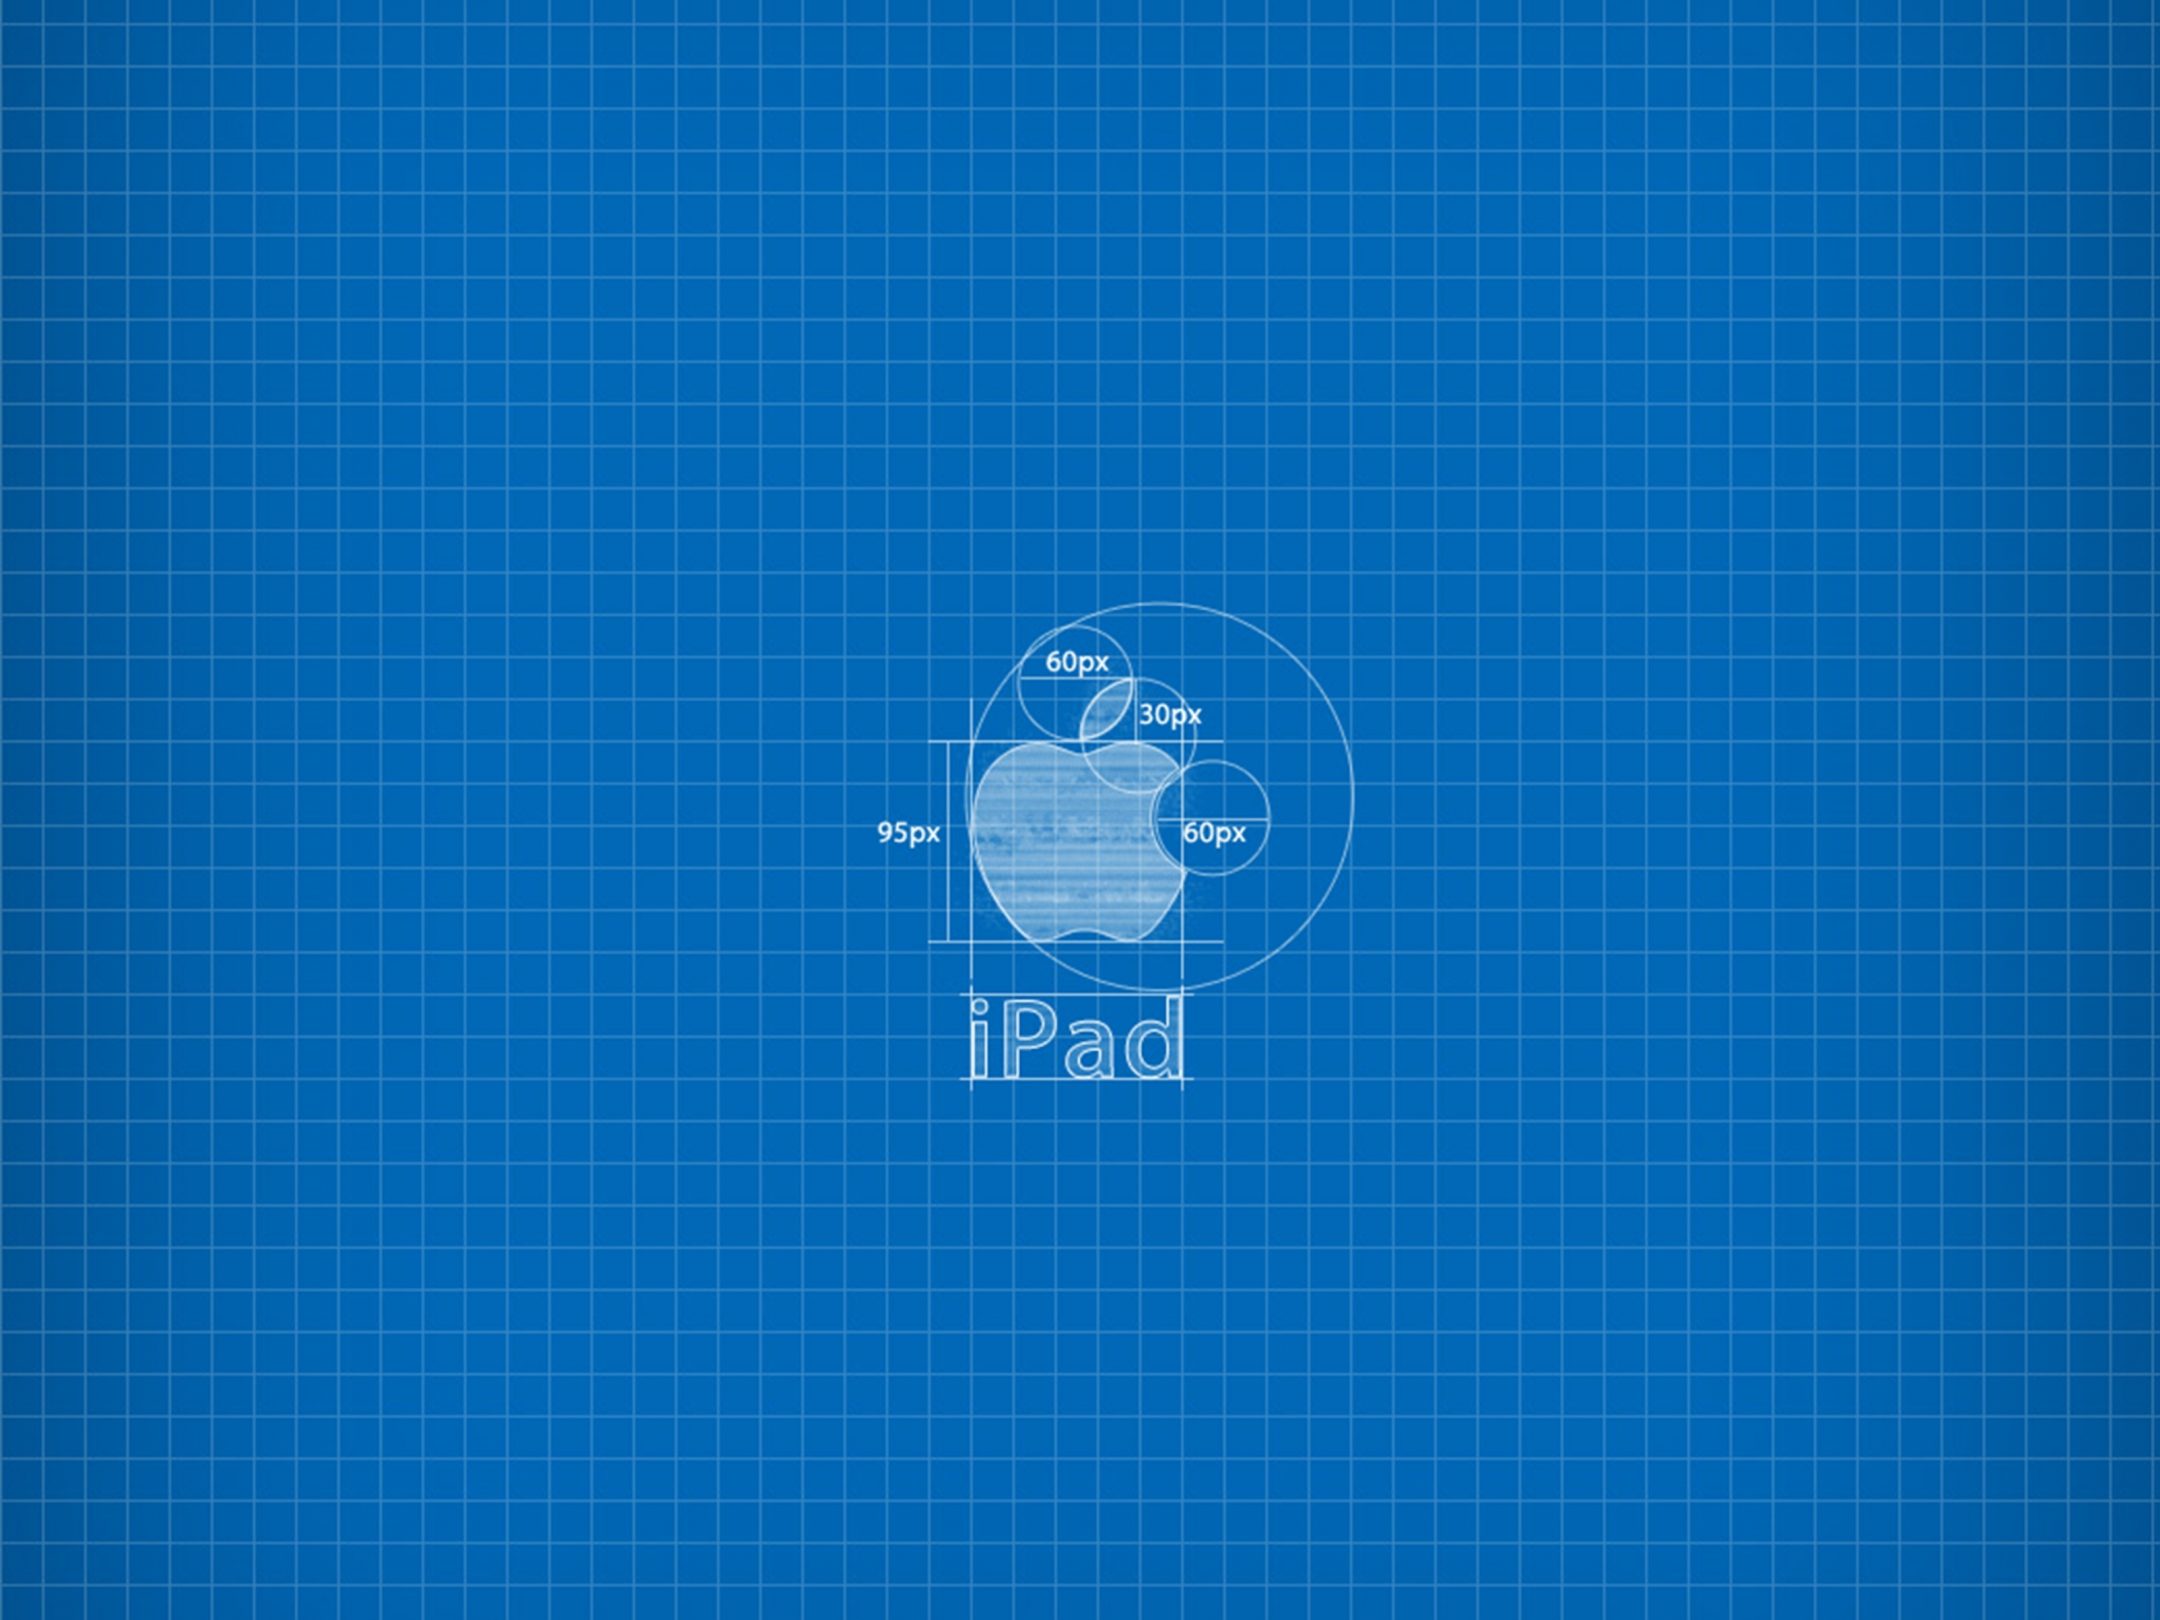 2160x1620 iPad wallpaper 4k Apple Blueprint Ipad Wallpaper 2160x1620 pixels resolution